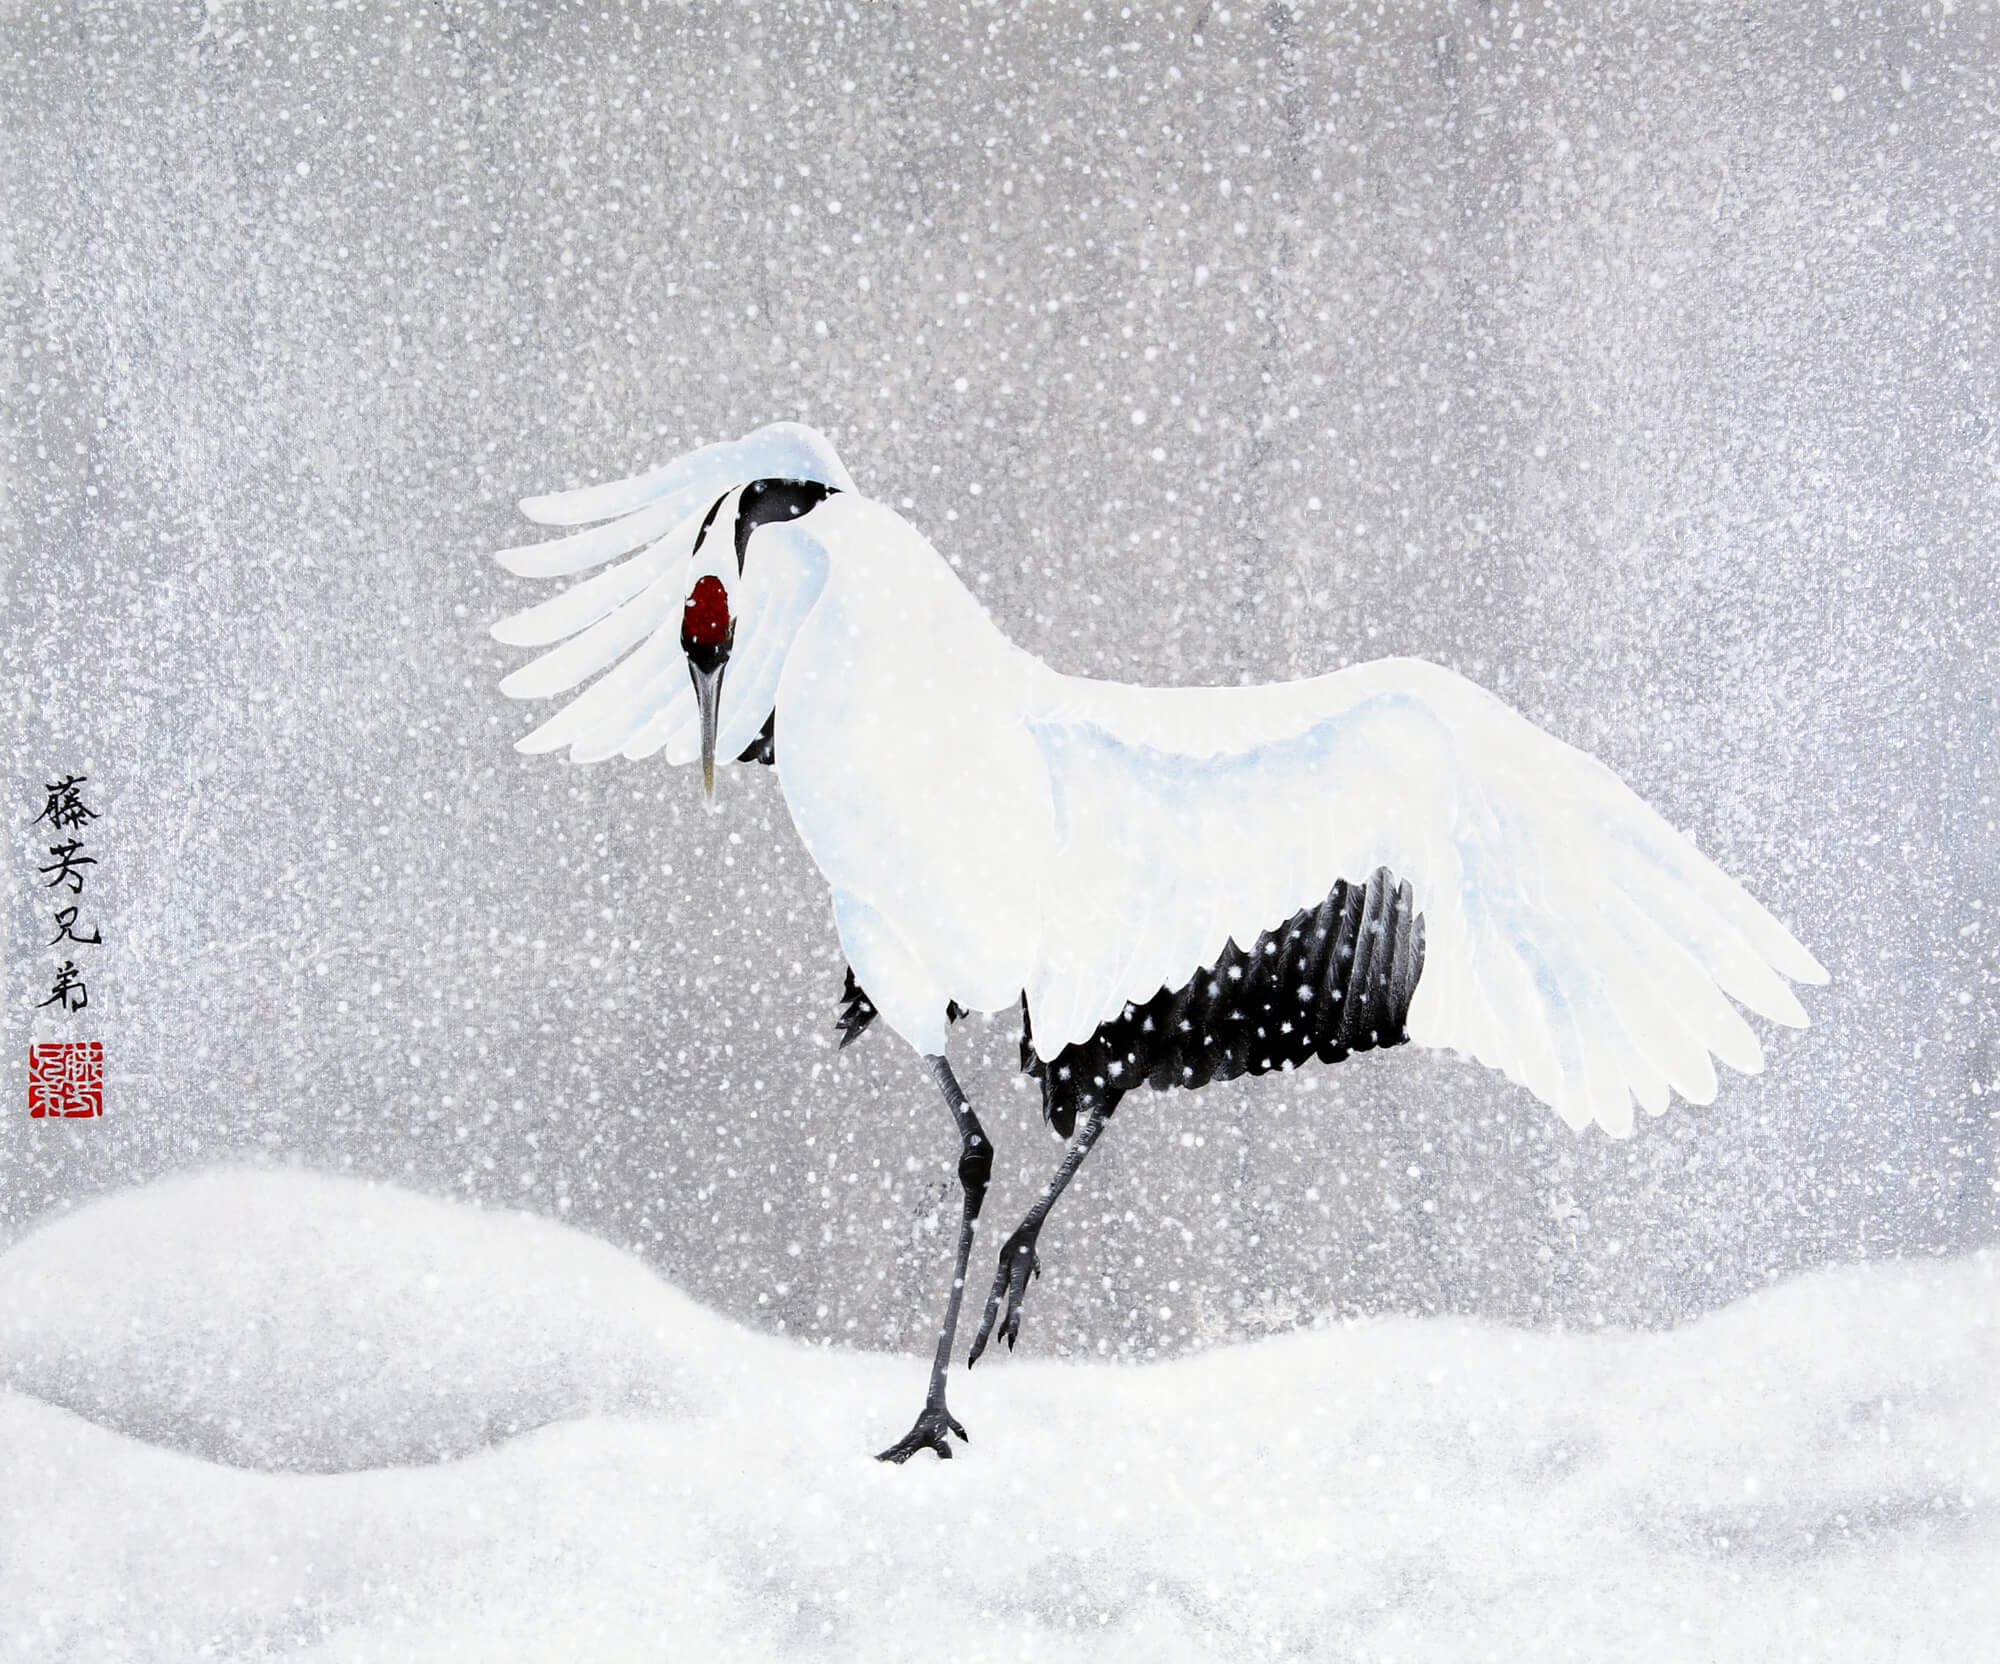 雪中鶴図改行
Acrylic on canvas,727×606mm, 2019